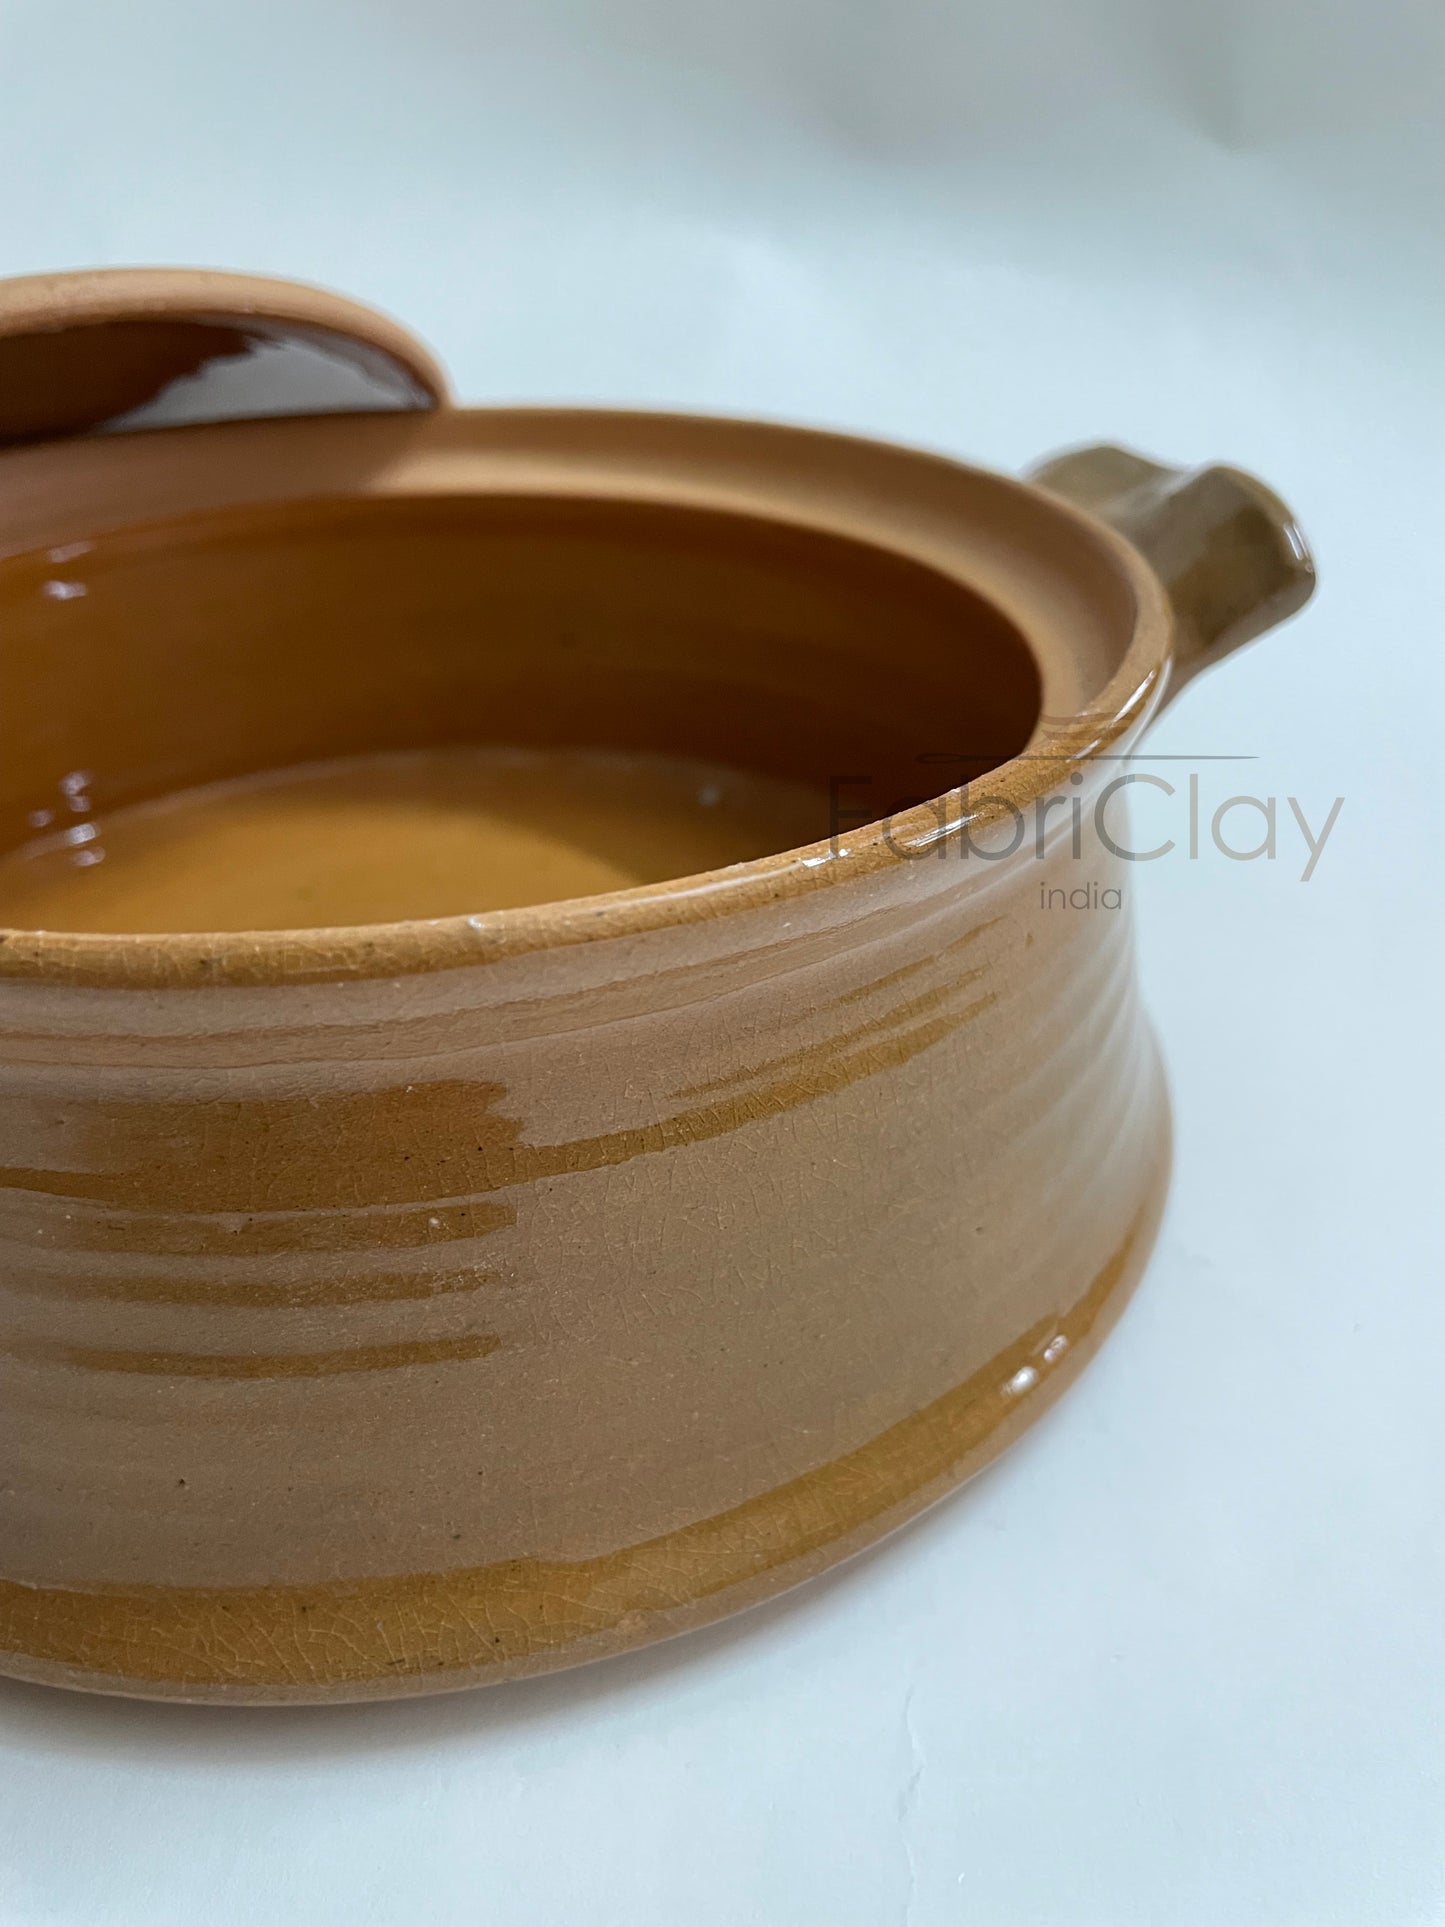 Ceramic tableware